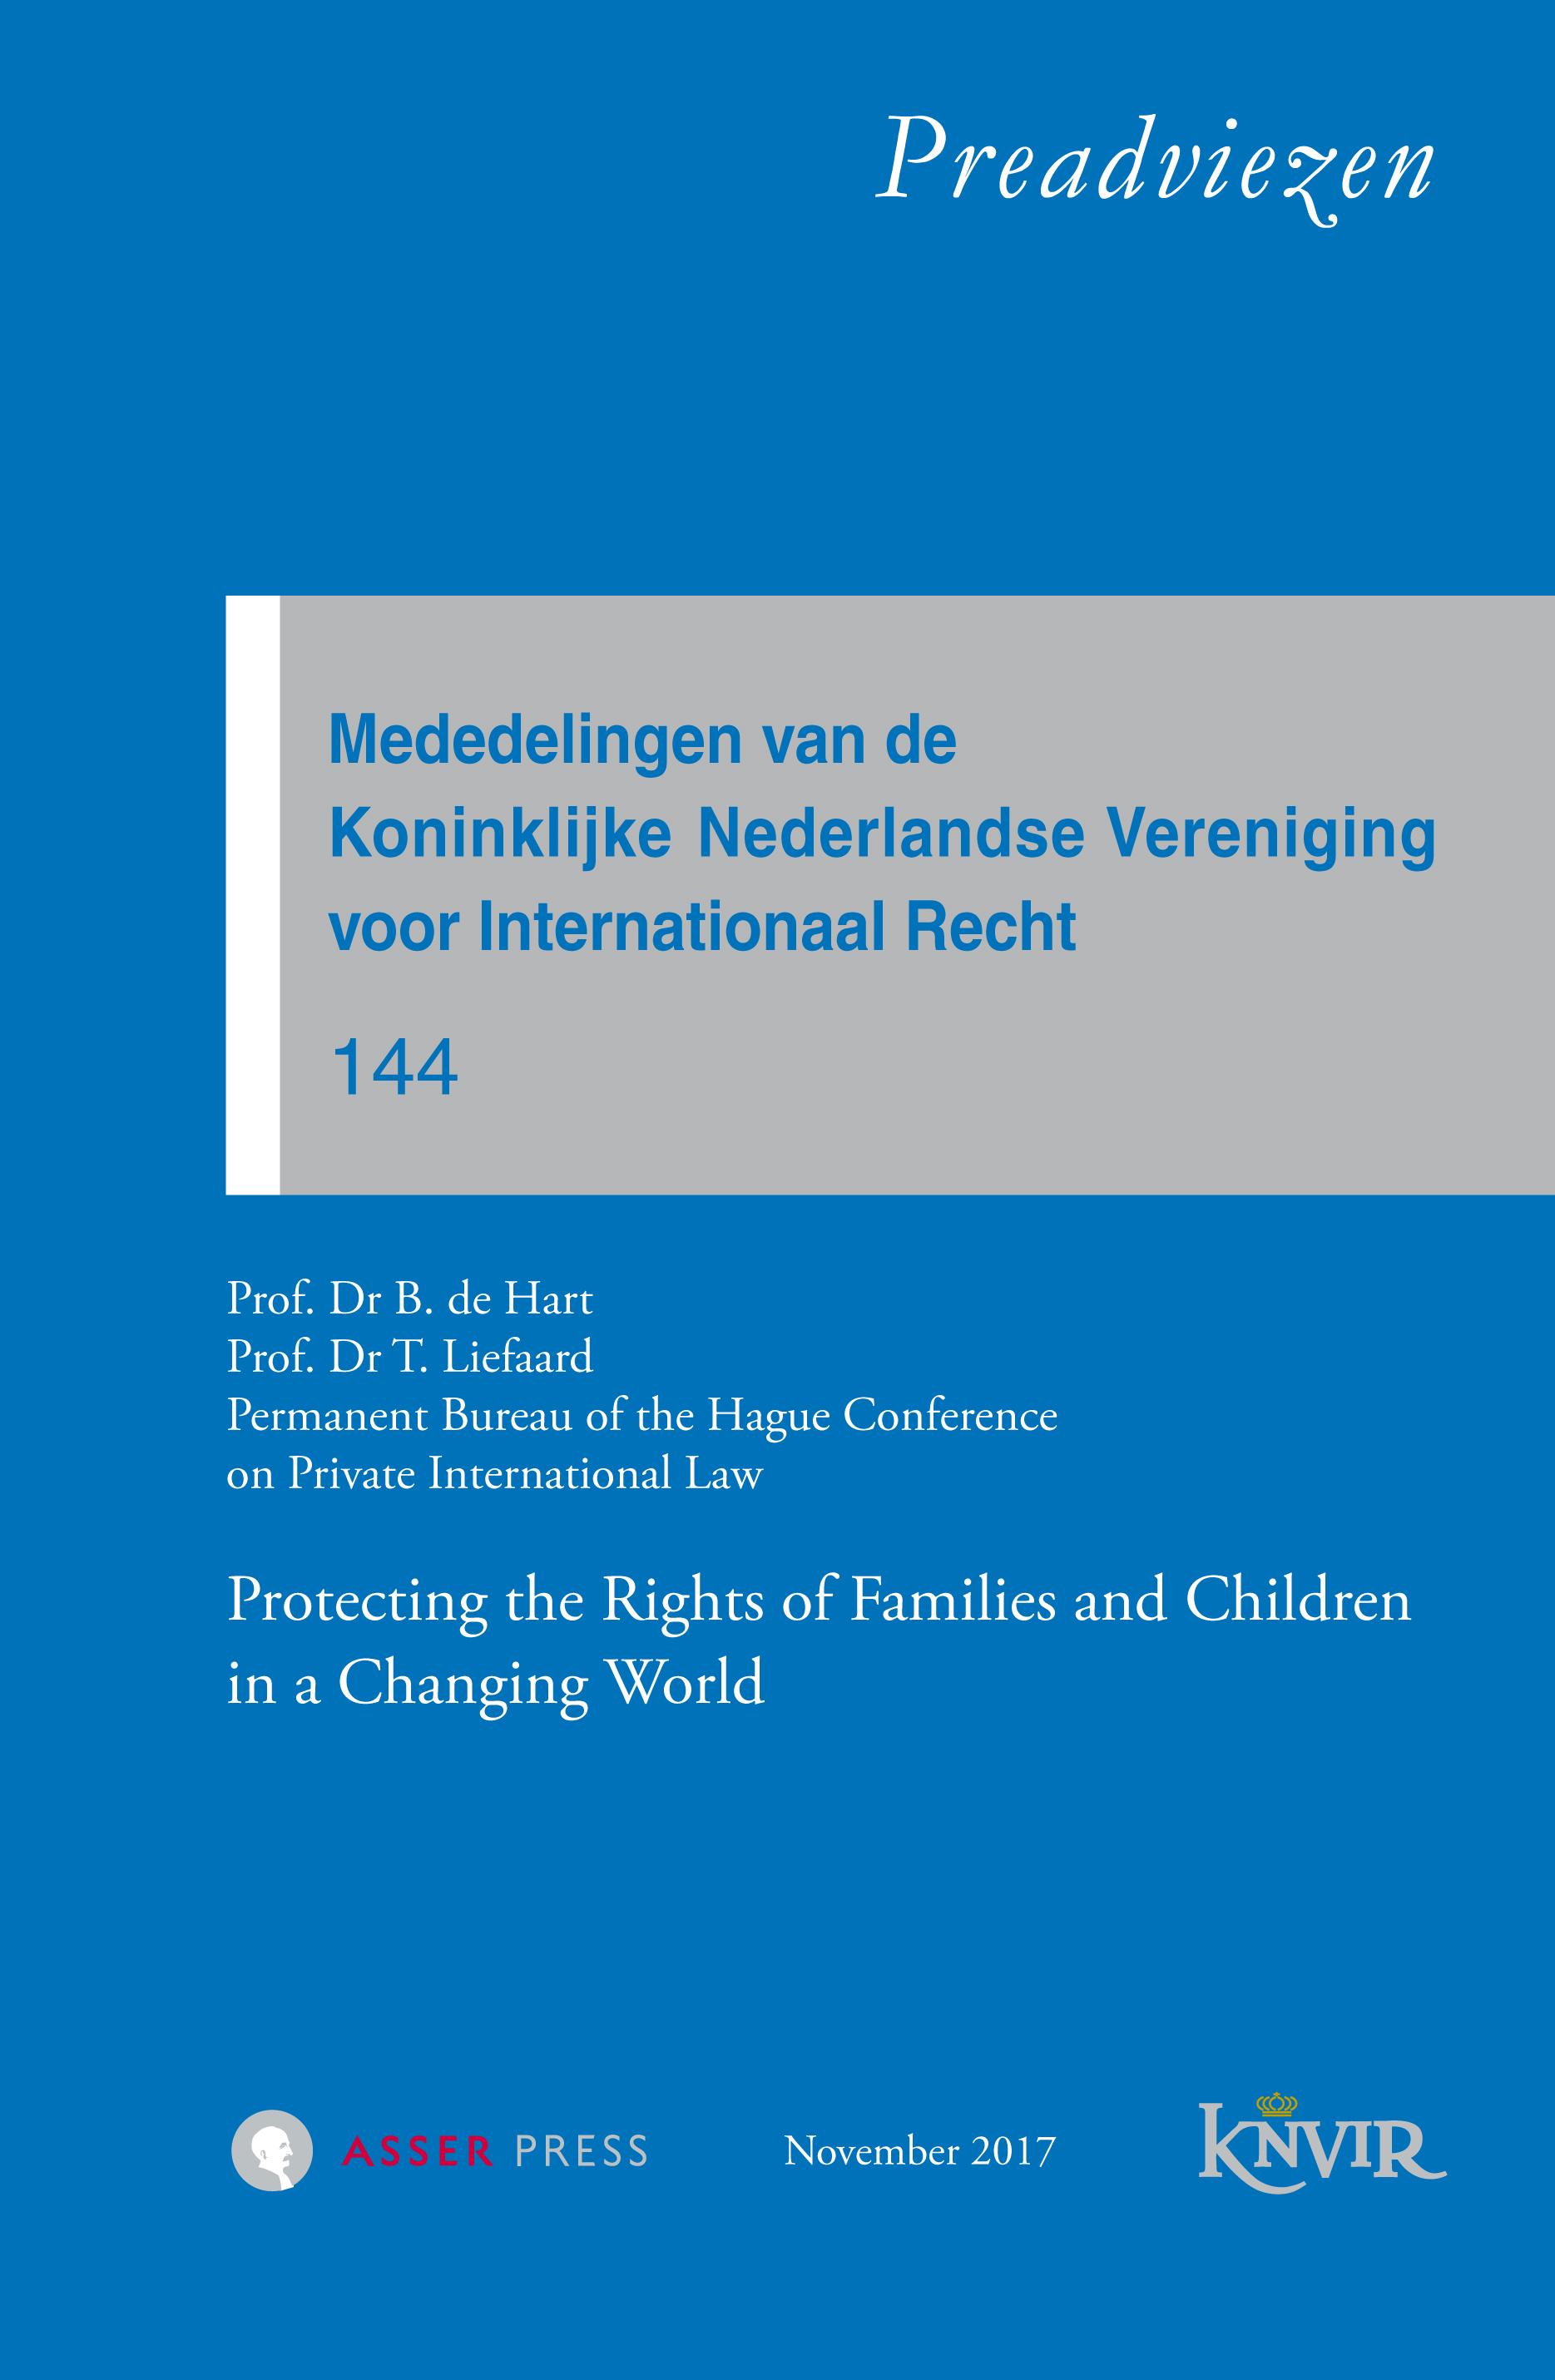 Mededelingen van de Koninklijke Nederlandse Vereniging voor Internationaal Recht - nr 144 - Protecting the Rights of Families and Children in a Changing World